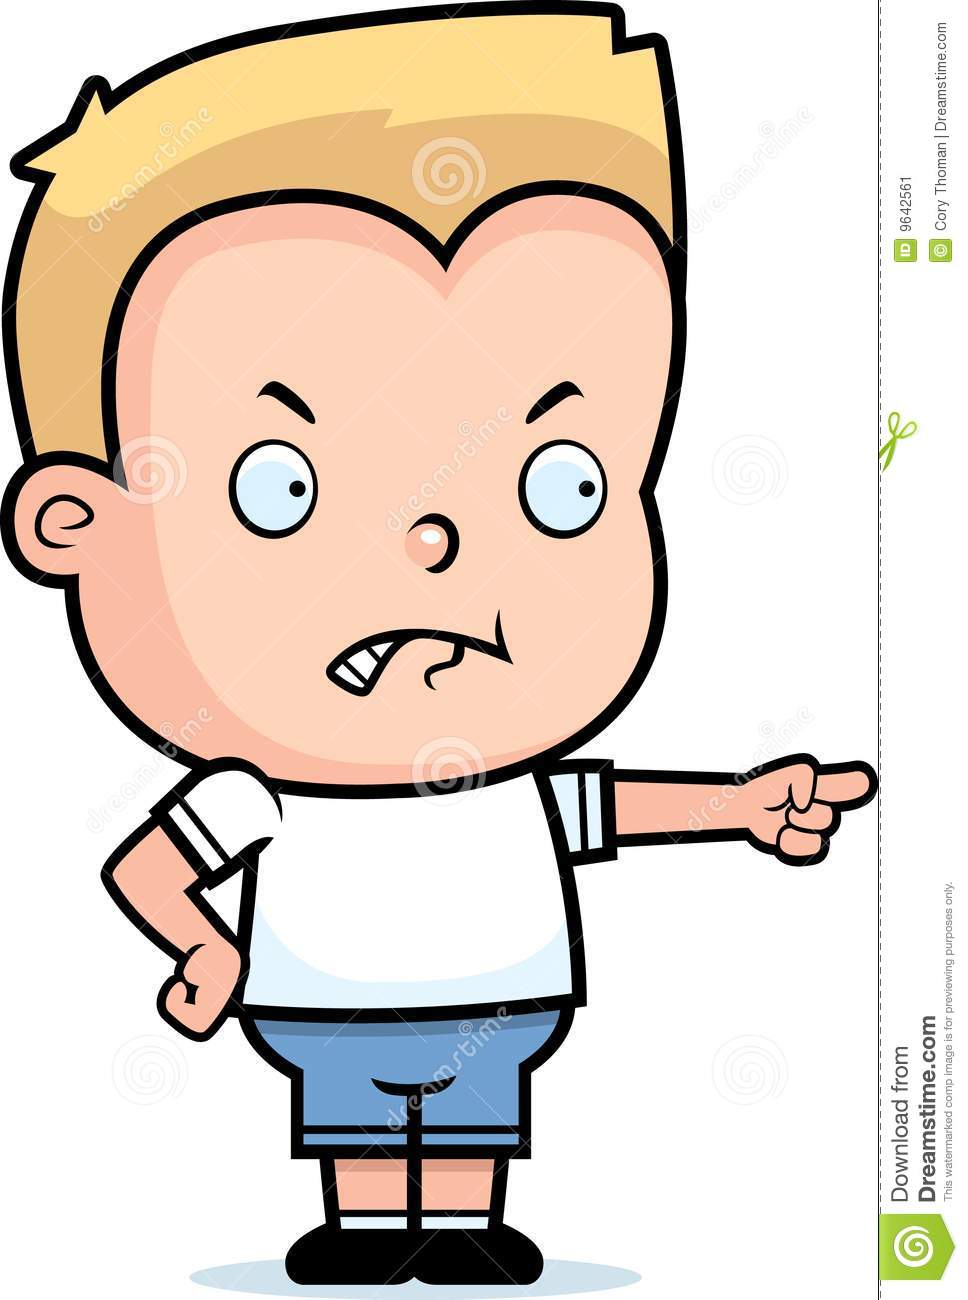 Angry Boy Stock Image   Image  9642561